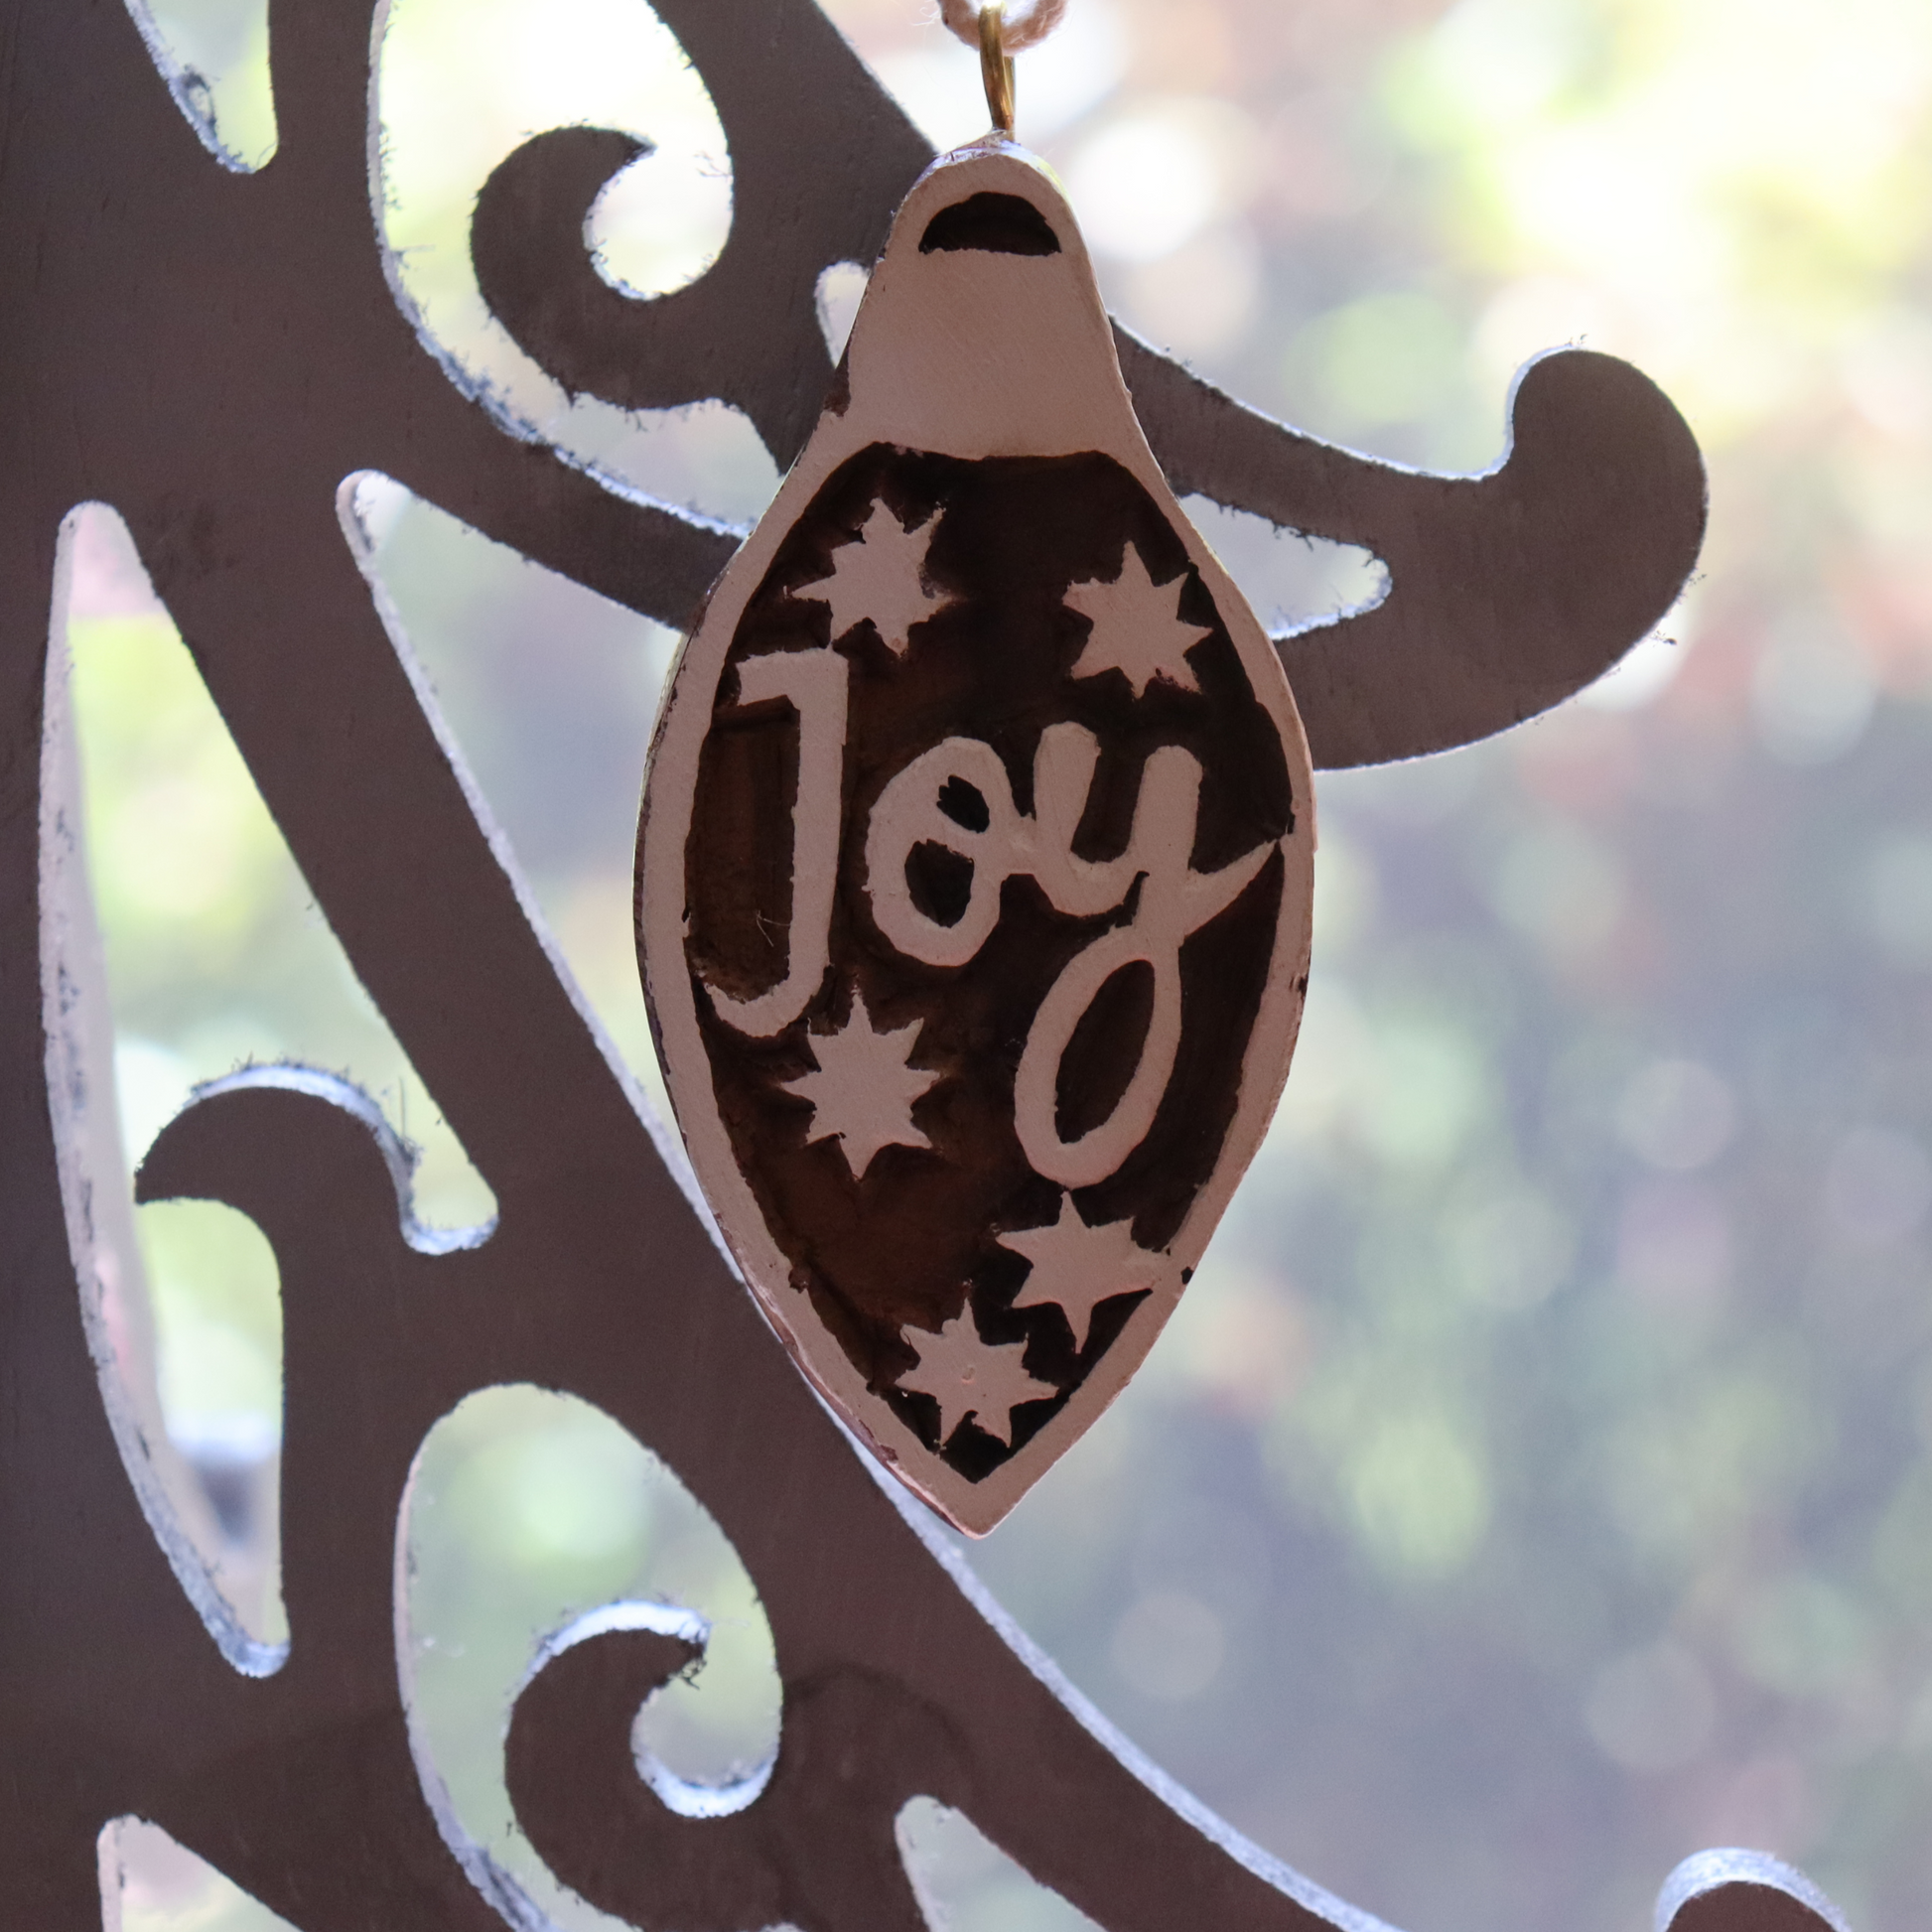 Joy Wooden Xmas Ornament - Handmade, Decorative Festive Pendant - Aksa Home Decor 